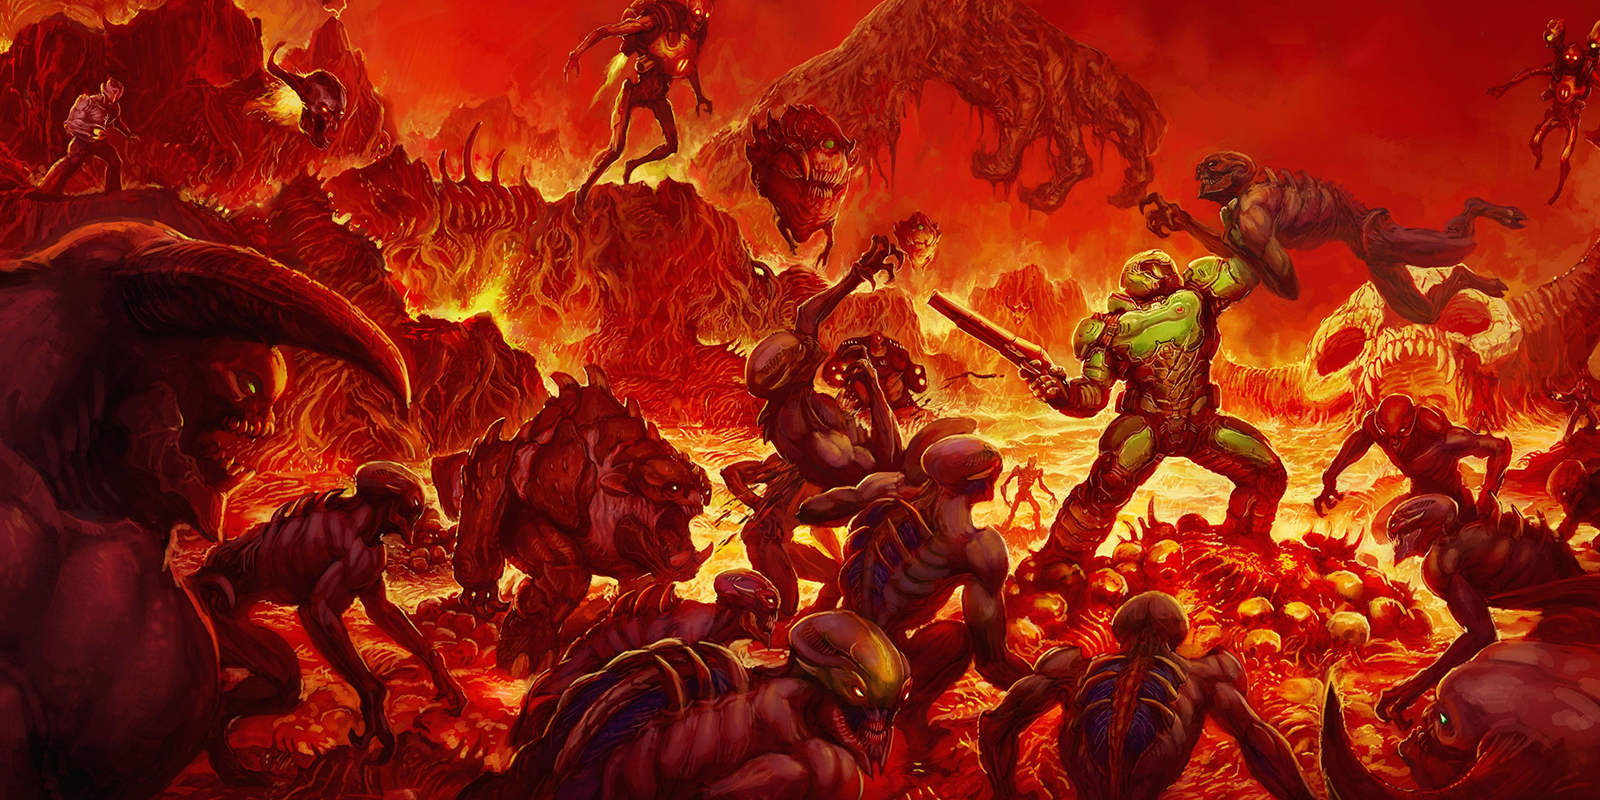 Doom ma prawie 30 lat i nadal bawi. W czym tkwi sekret tej serii?